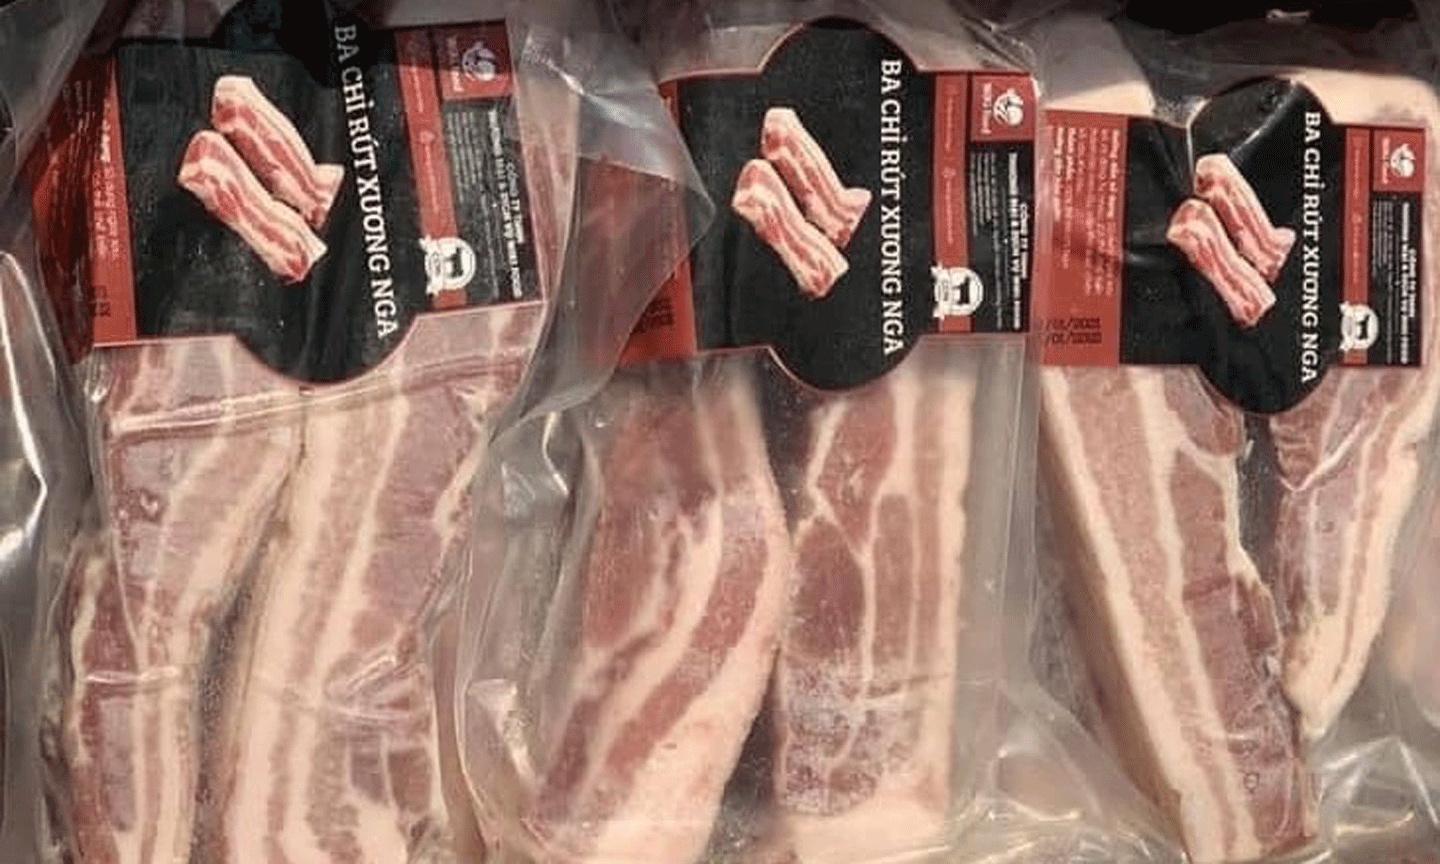 Riêng quý I, lượng thịt lợn nhập khẩu tăng hơn 100% so với cùng kỳ năm 2020 - Ảnh: VGP/Đỗ Hương 